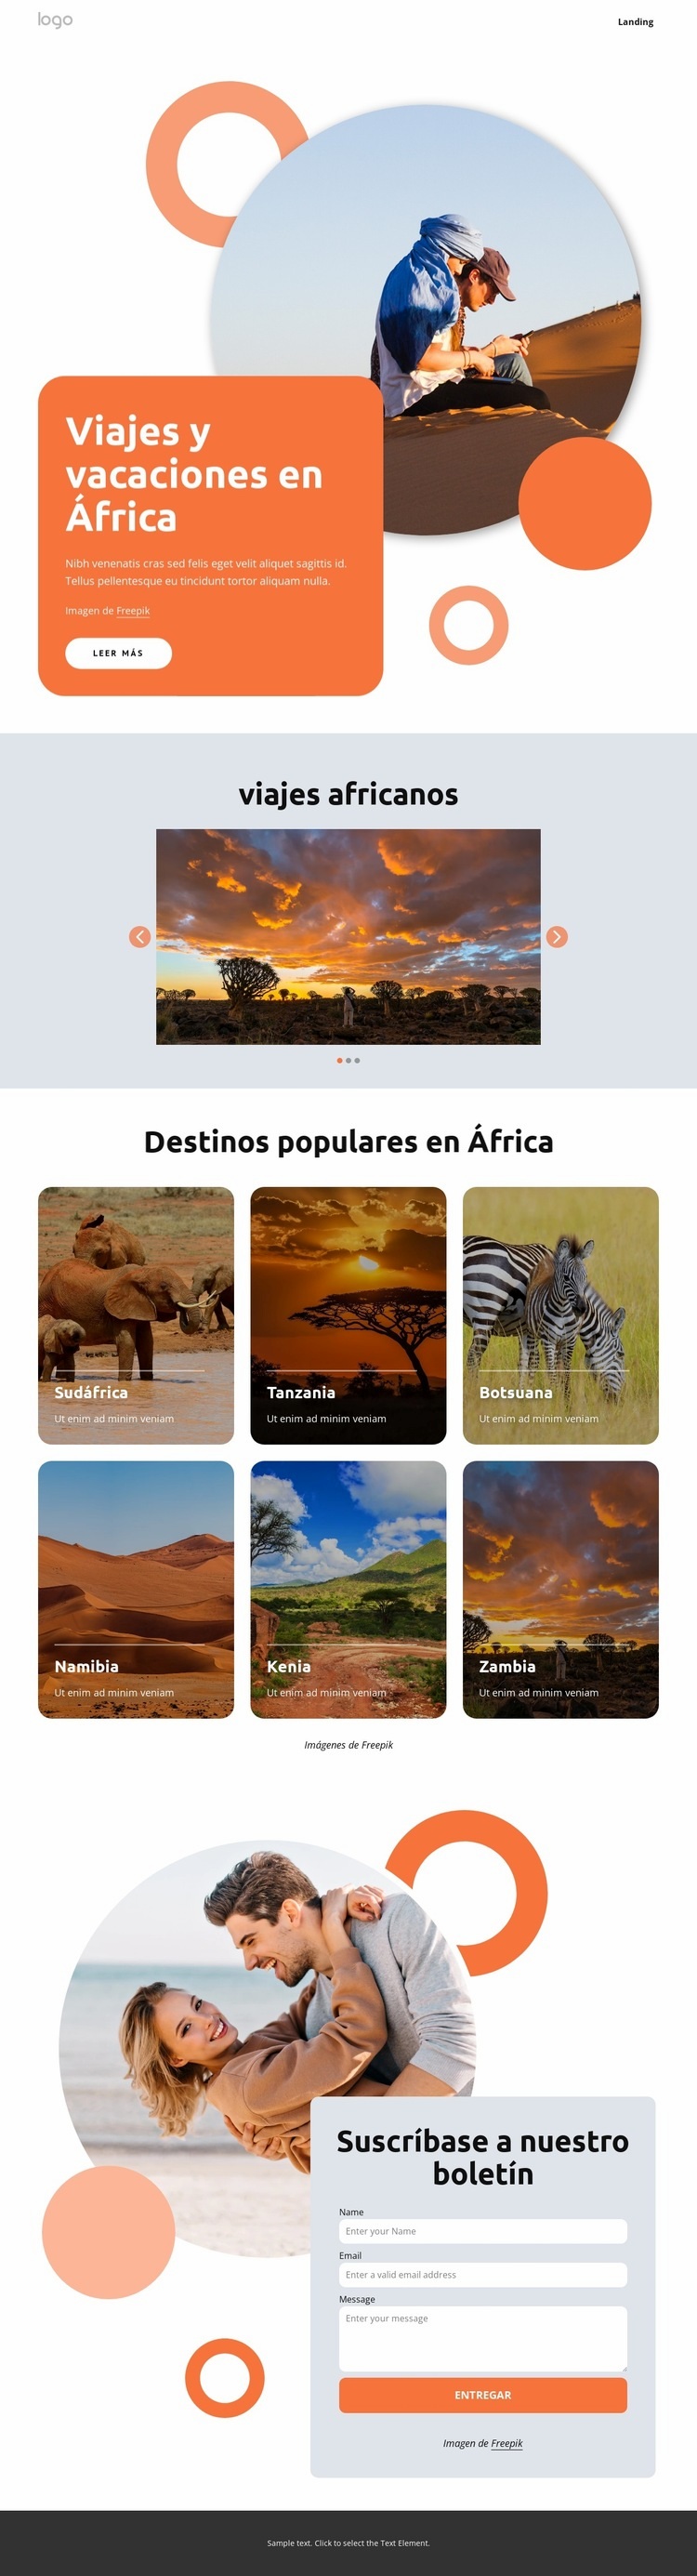 Vacaciones africanas hechas a mano Diseño de páginas web